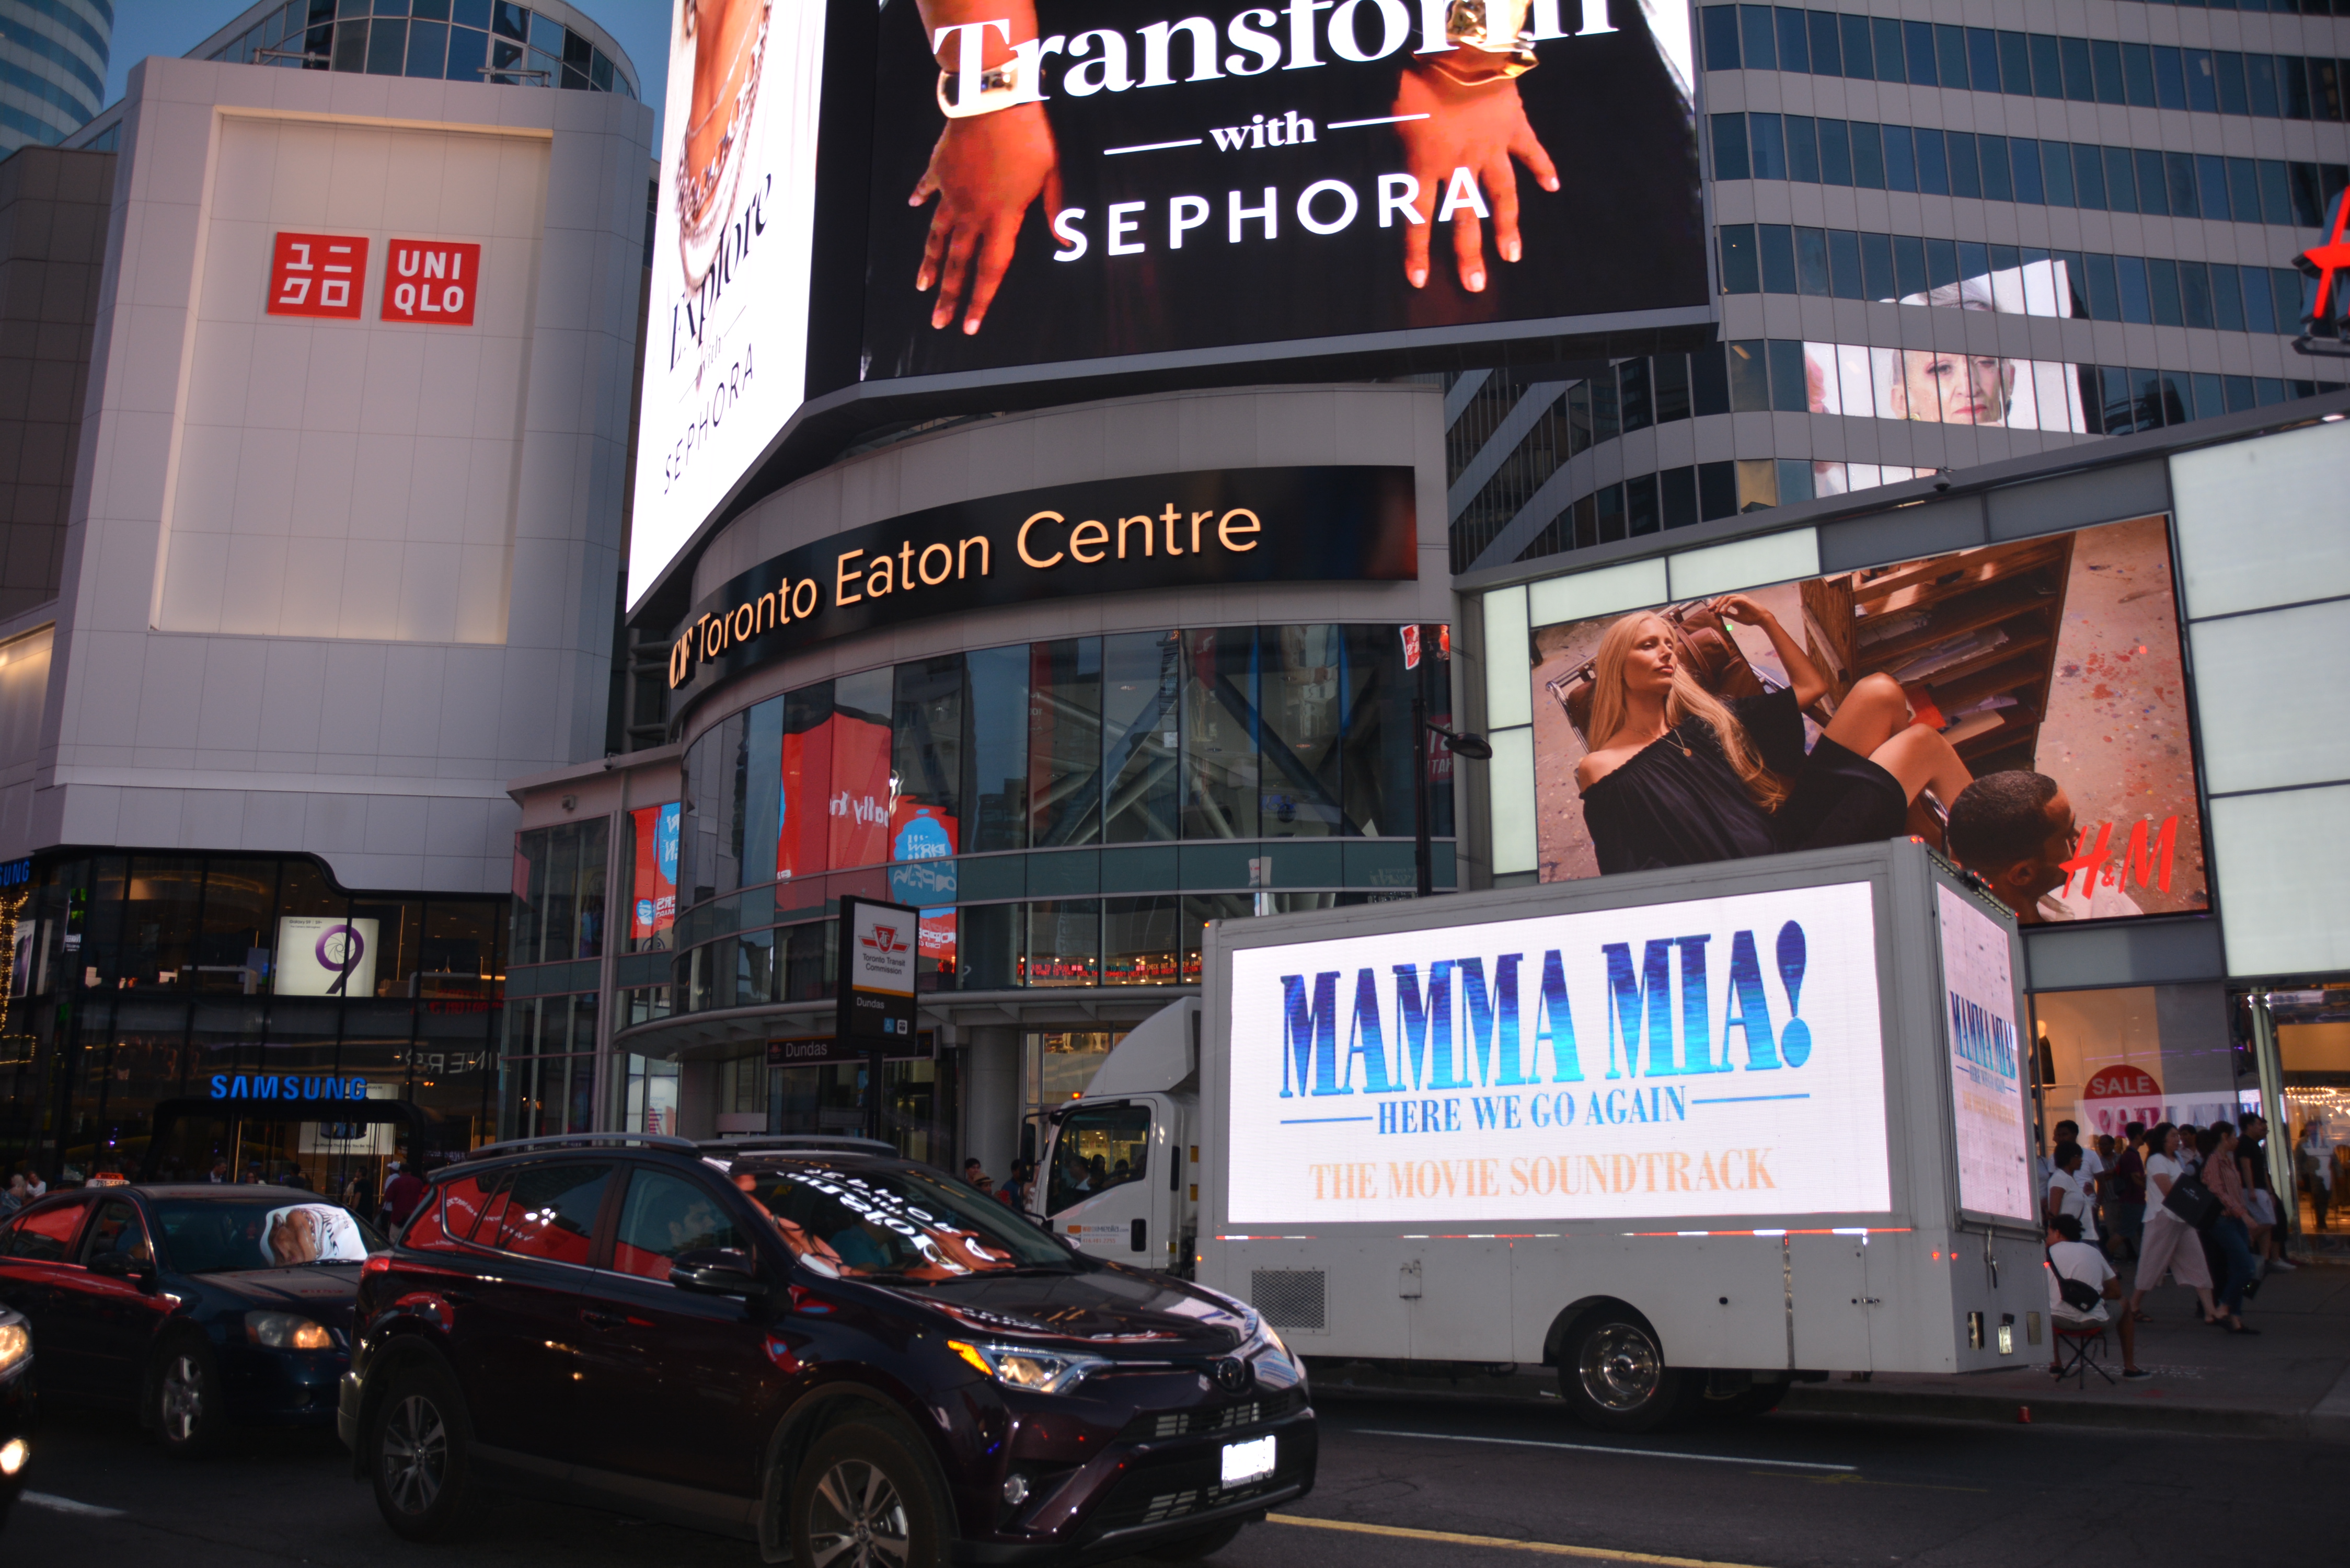 Mamma Mia Soundtrack Digital Ad Truck